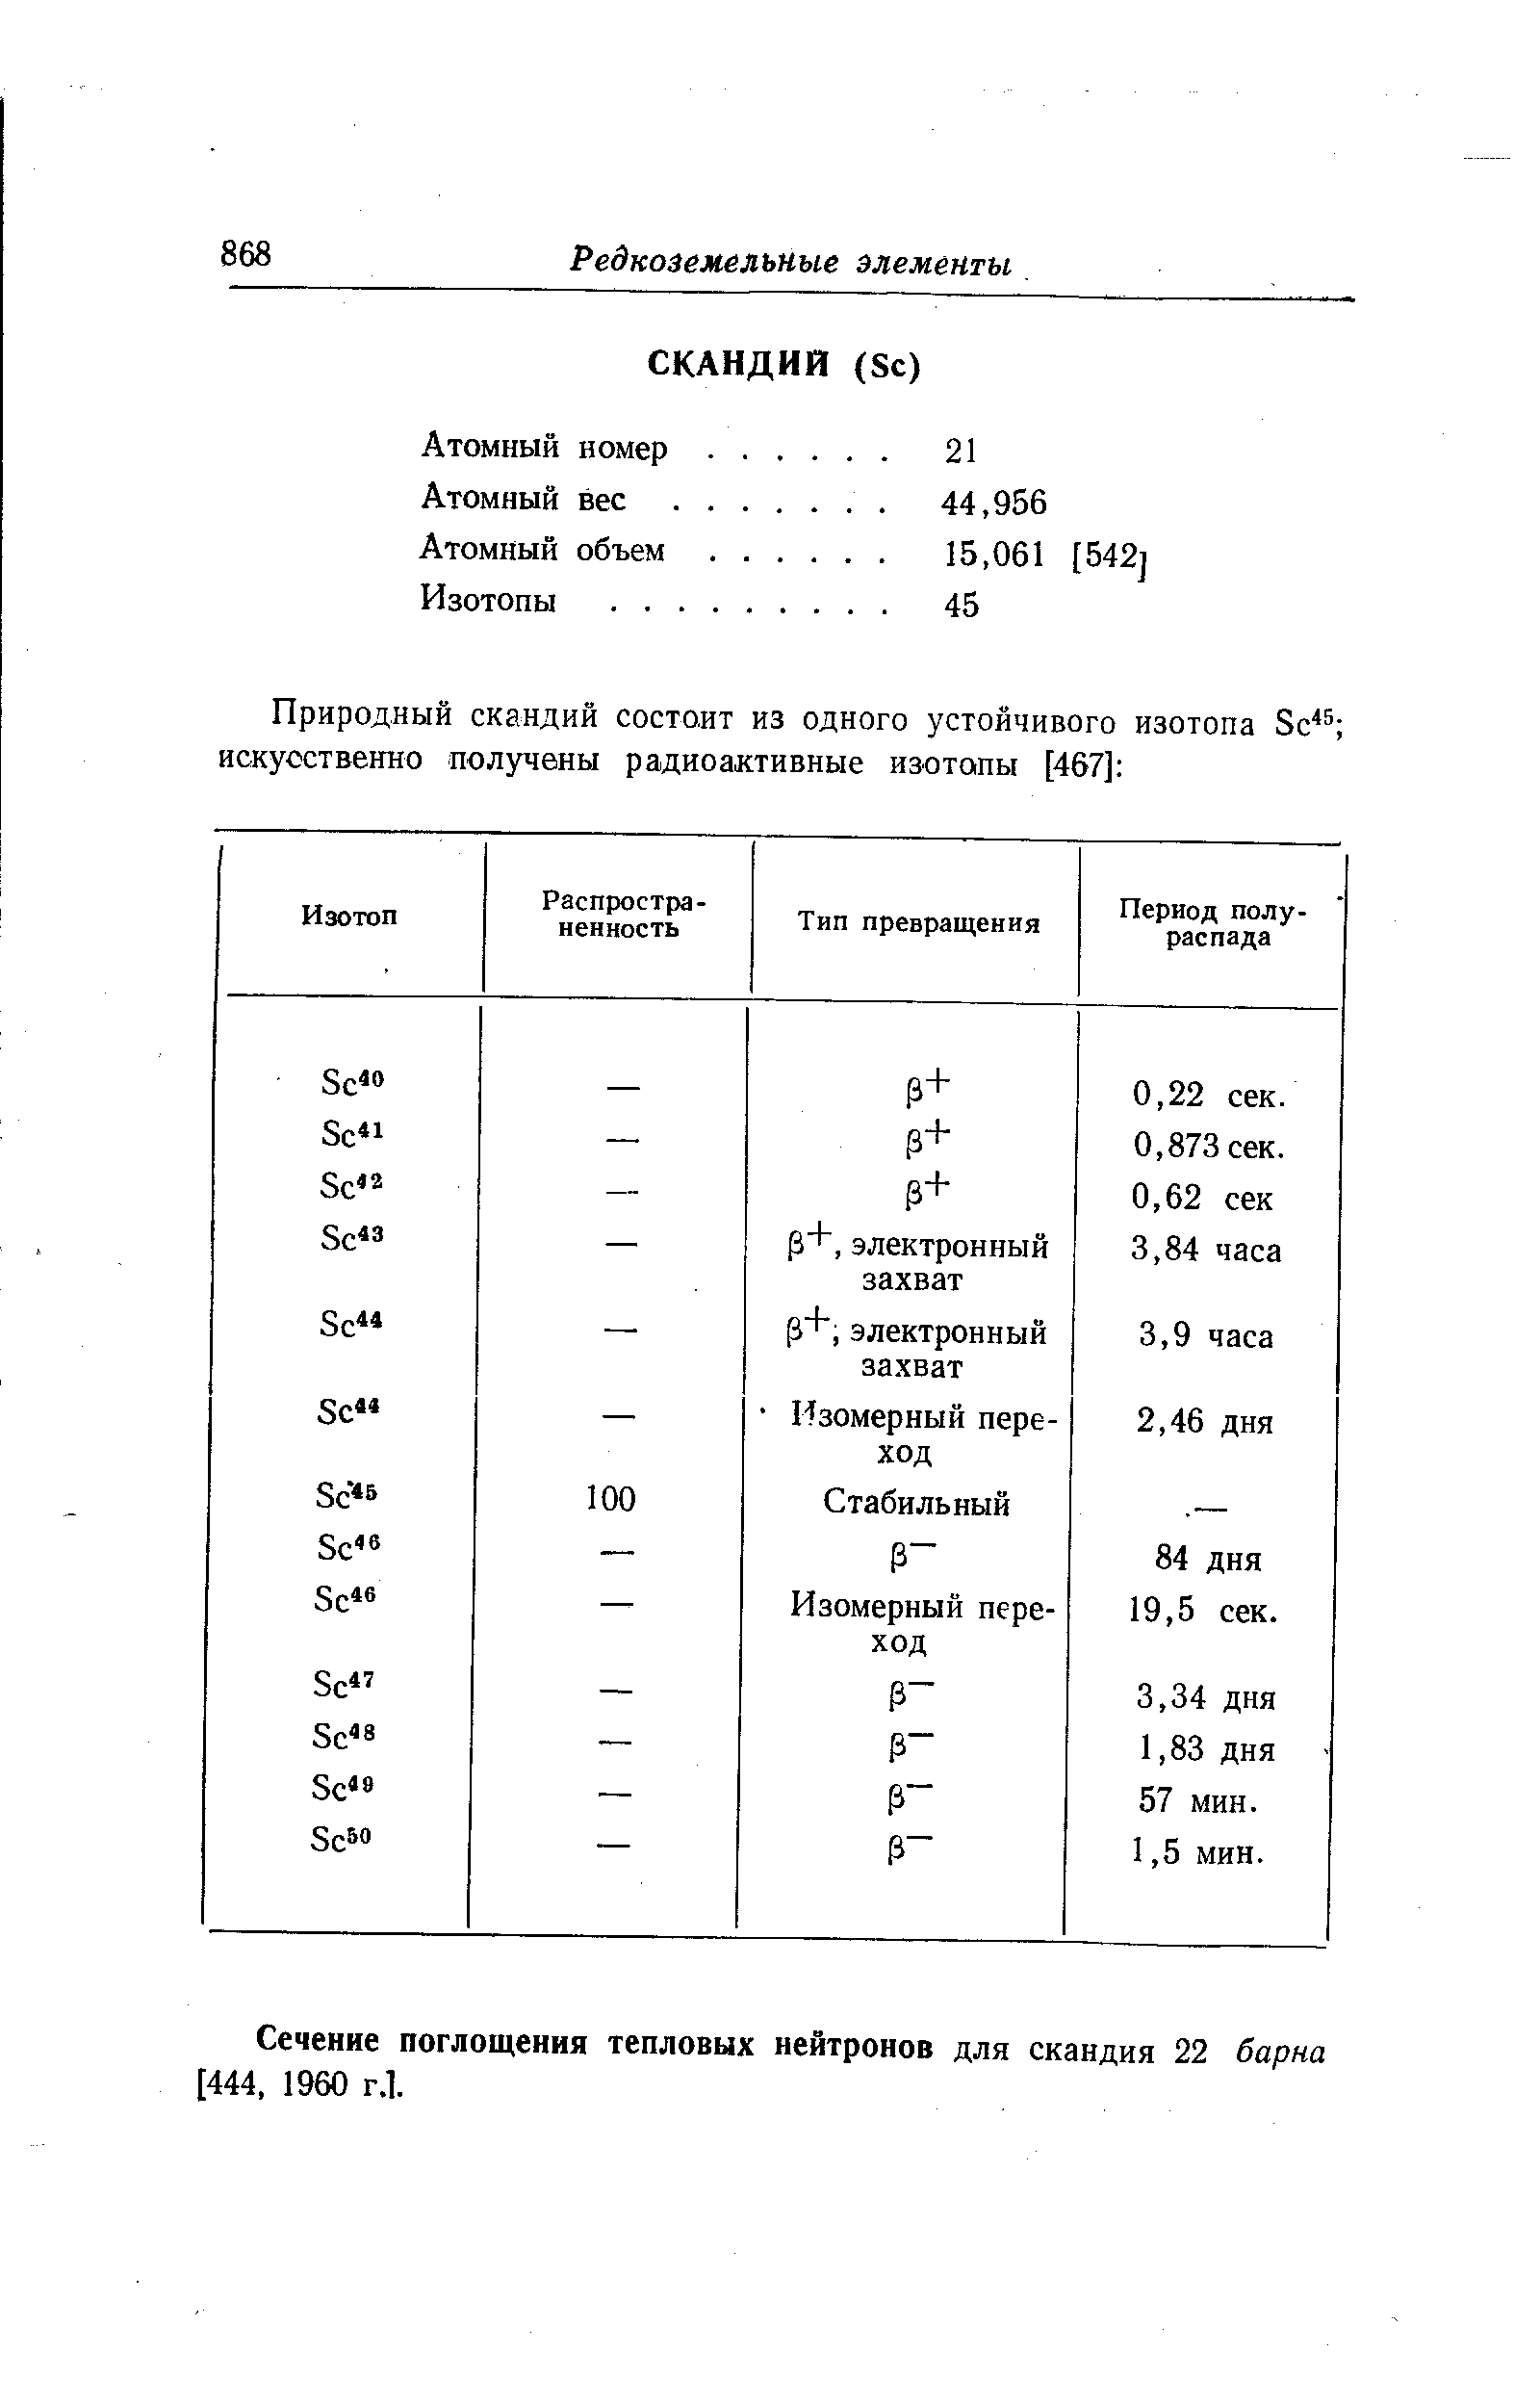 Сечение поглощения тепловых нейтронов для скандия 22 барна [444, 1960 Г.1.